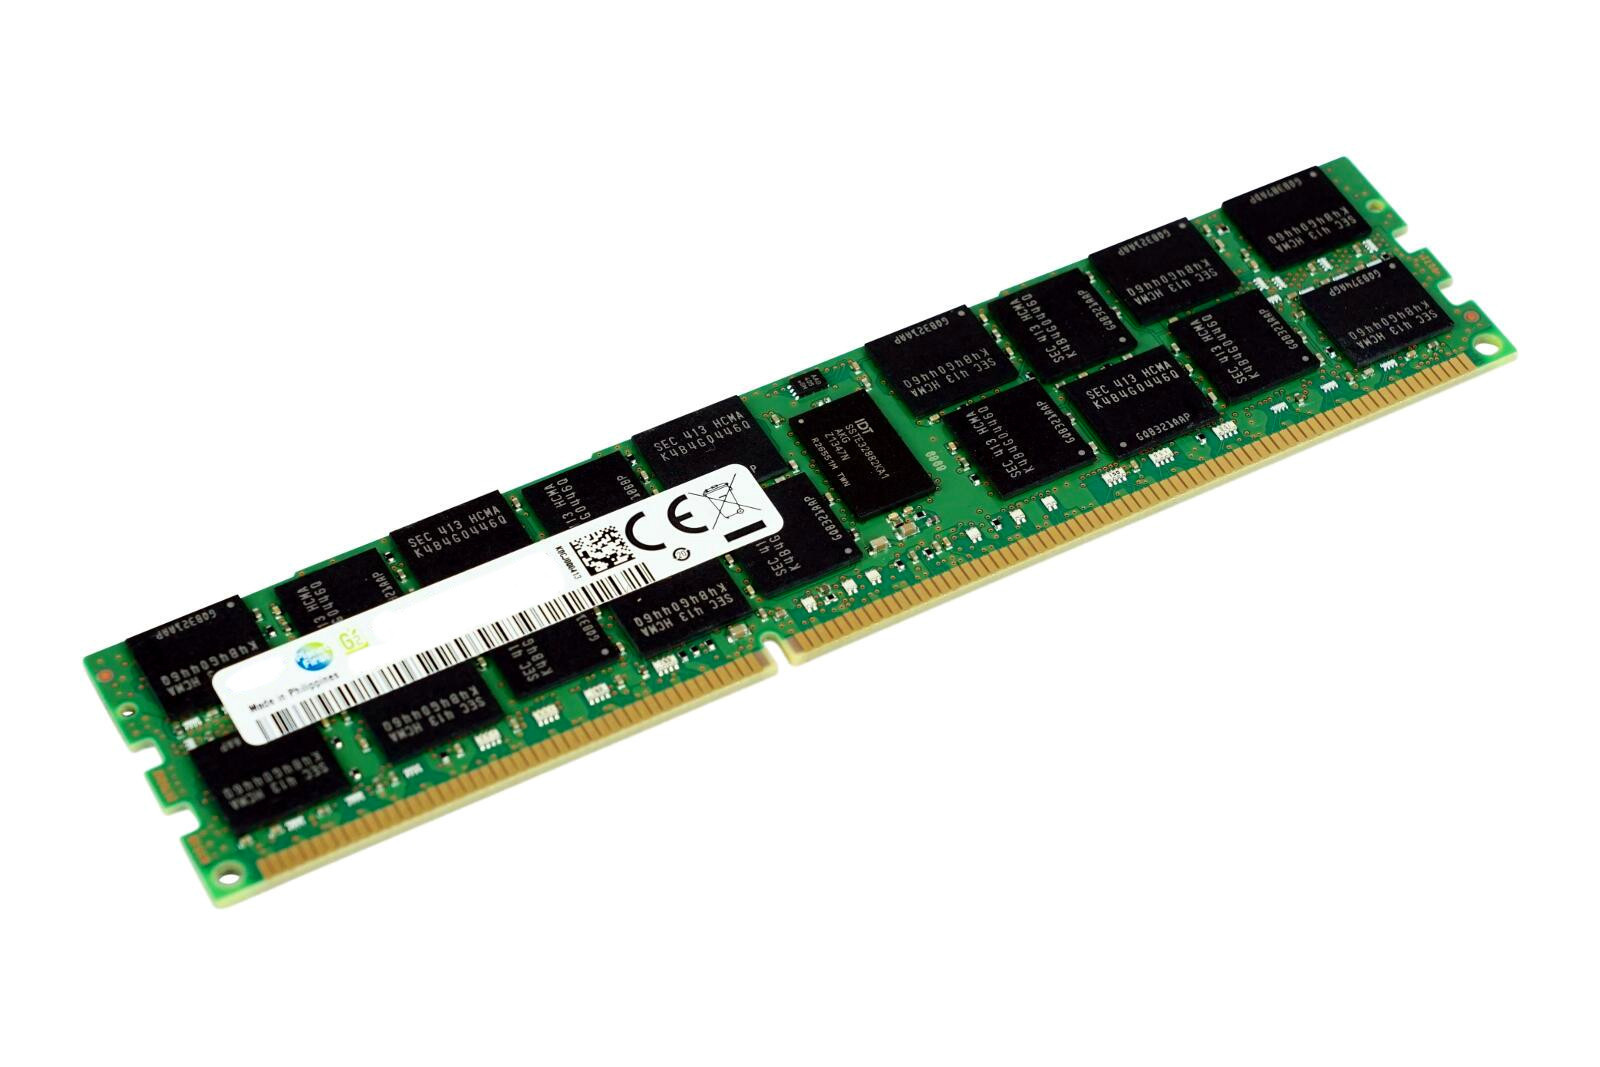 PC2100 - Non-ECC OFFTEK 128MB Replacement RAM Memory for Toshiba Equium 3260 Desktop Memory